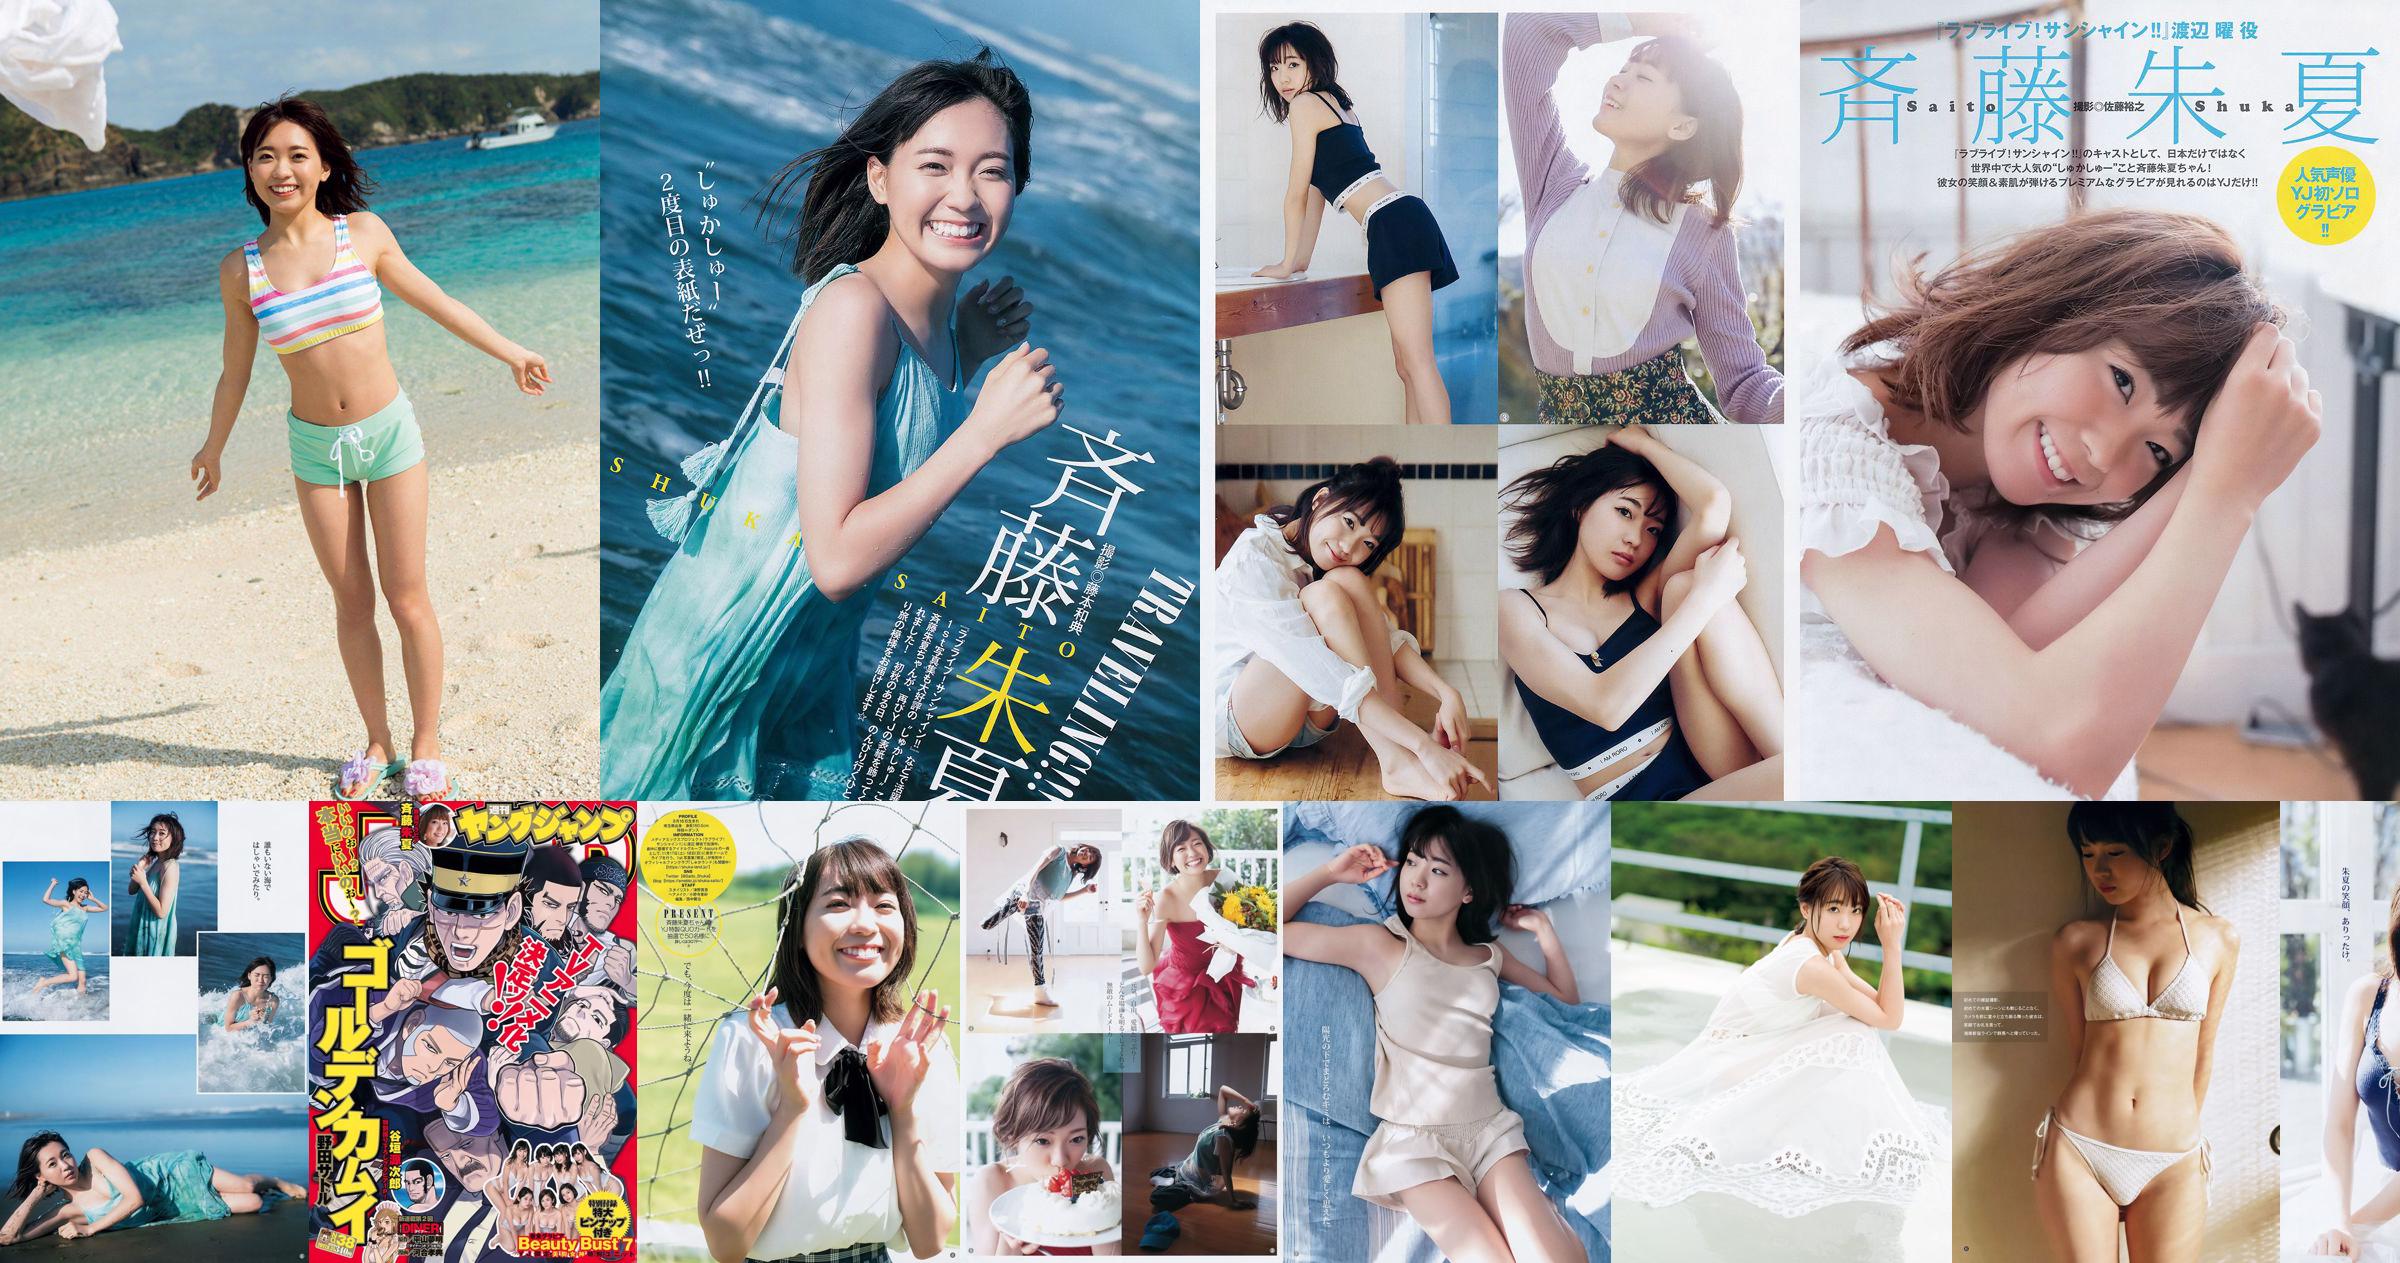 Shuka Saito Beauty Bust 7 [Weekly Young Jump] 2017 No.38 Photo No.5add98 Page 3